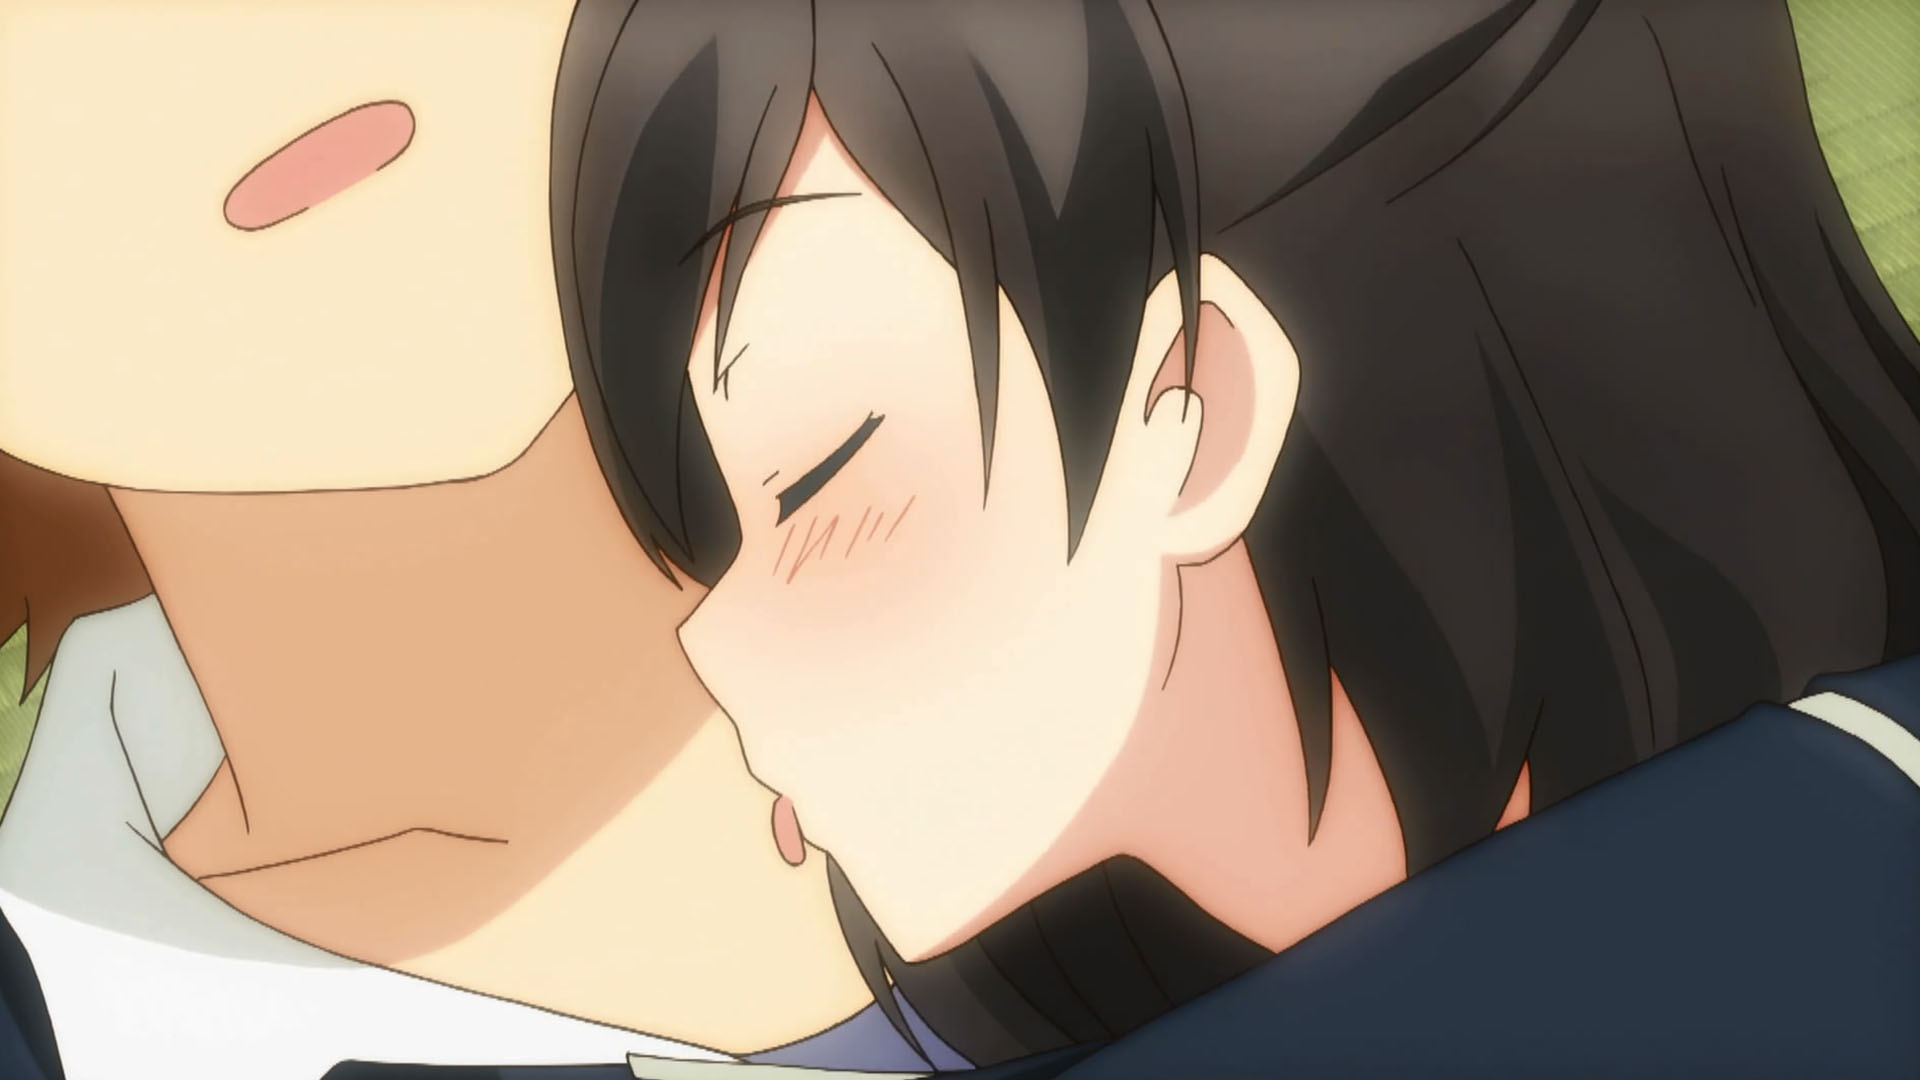 Anime neck bite